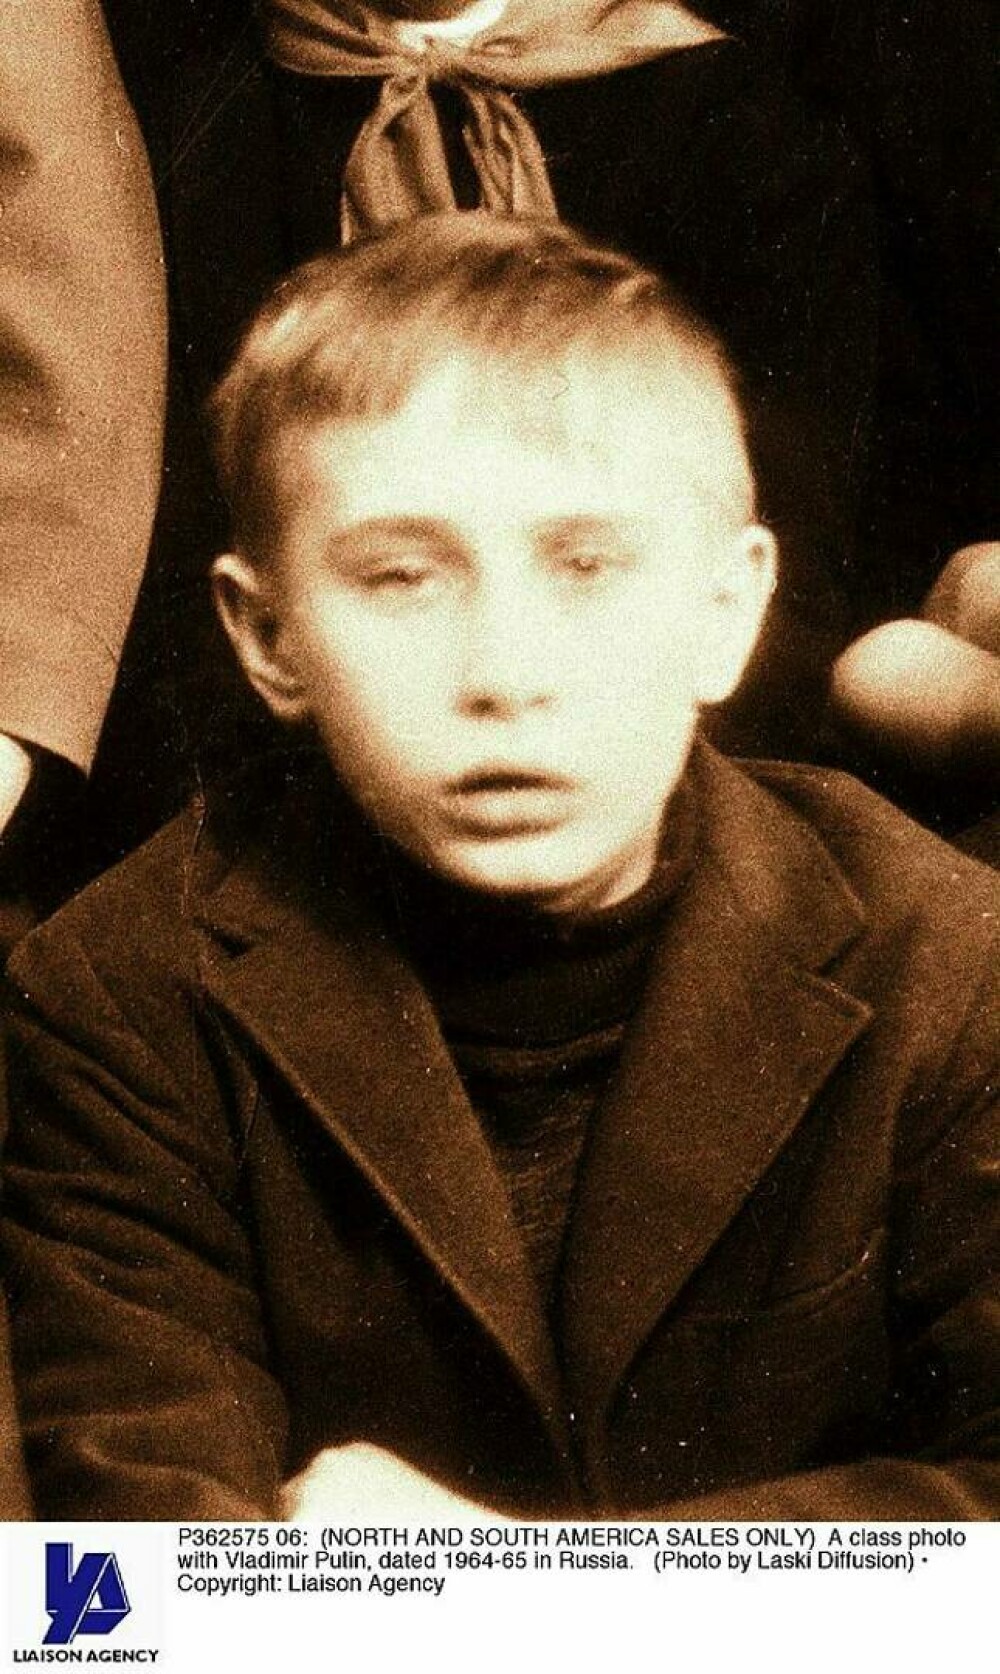 Viața lui Vladimir Putin - din tinerețe, apoi ofițer KGB și președintele care a alertat o lume întreagă - Imaginea 4